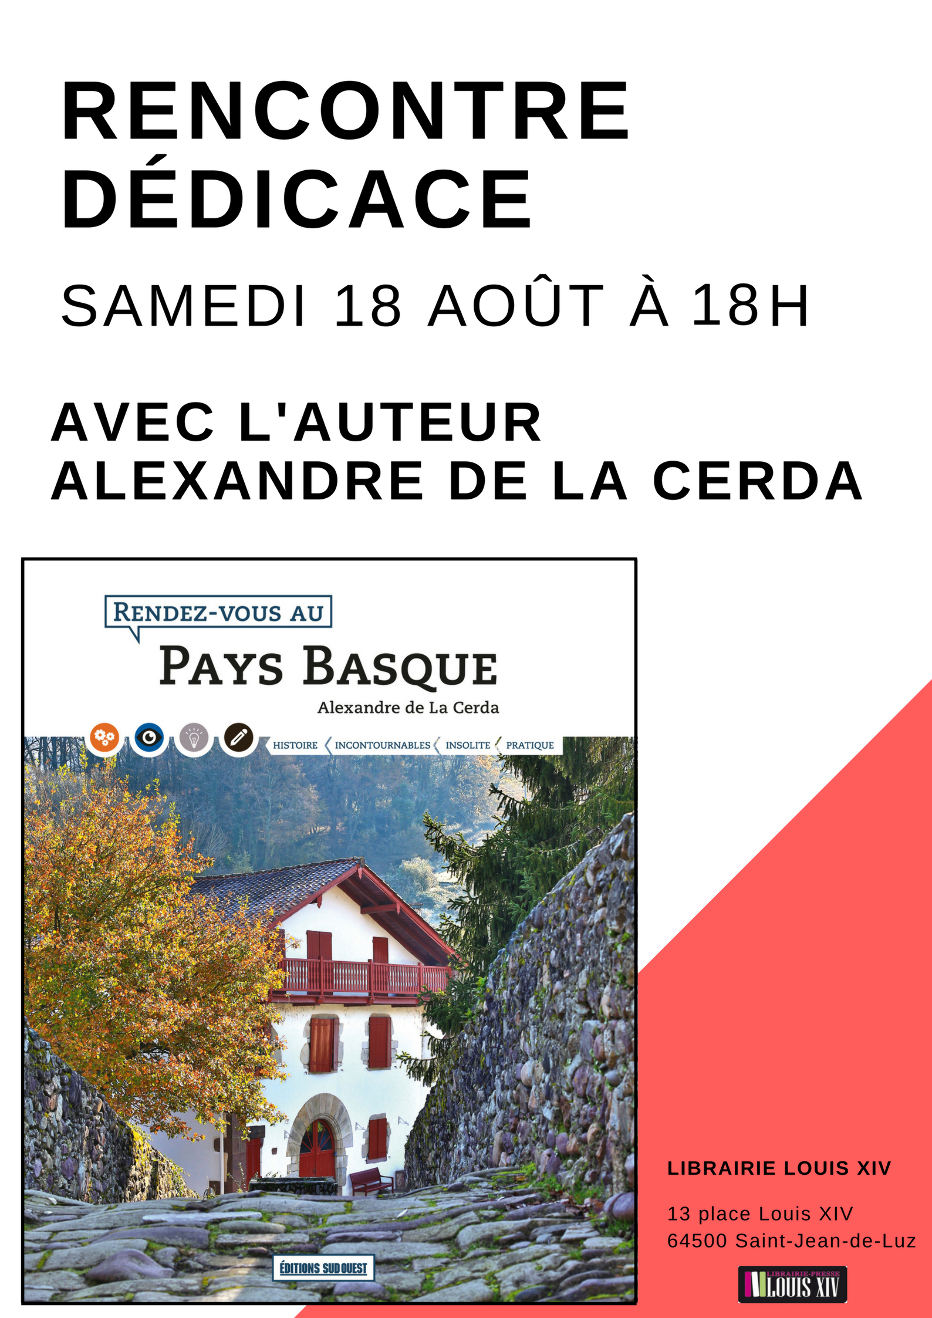 Samedi 18 août à 18h Signature d'Alexandre de La Cerda à la Librairie Louis XIV à Saint-Jean-de-Luz